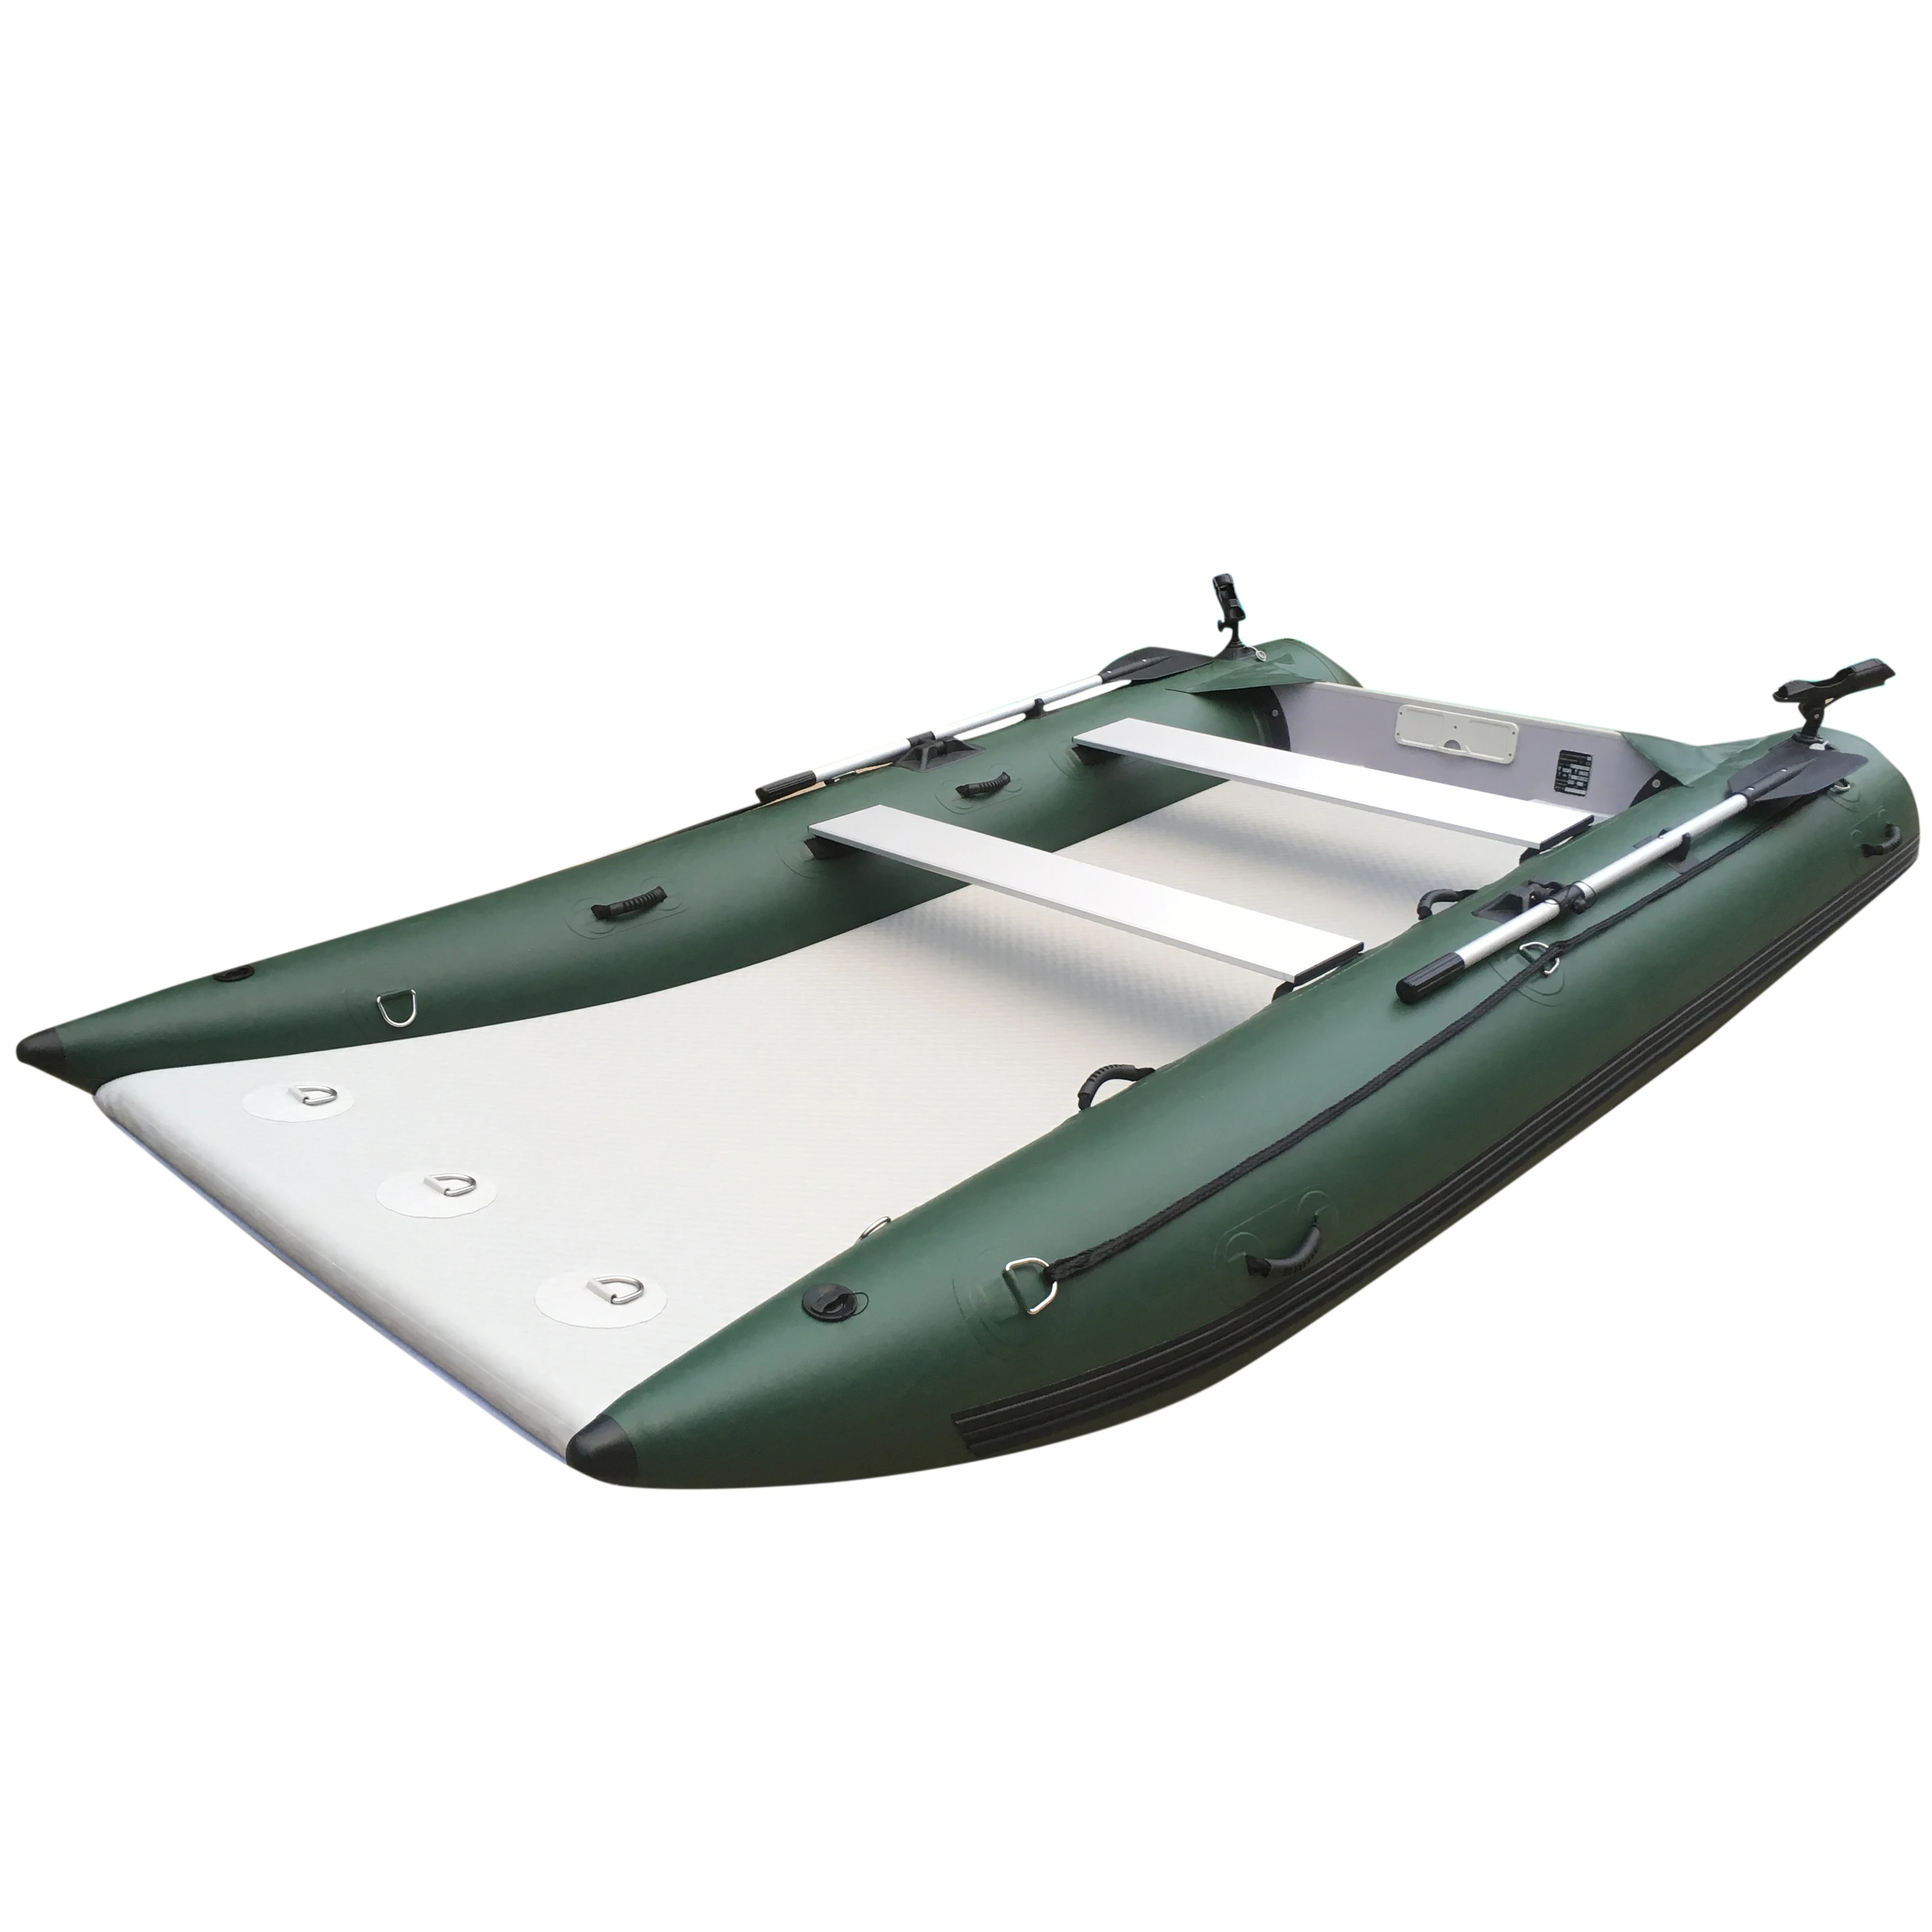 MC365 fabbrica diretta ad alta velocità Air Deck Top pesce caldo accessori  per la pesca canna da esterno gazebo tenda gonfiabile campeggio palestra  barca|Barche a remi| - AliExpress